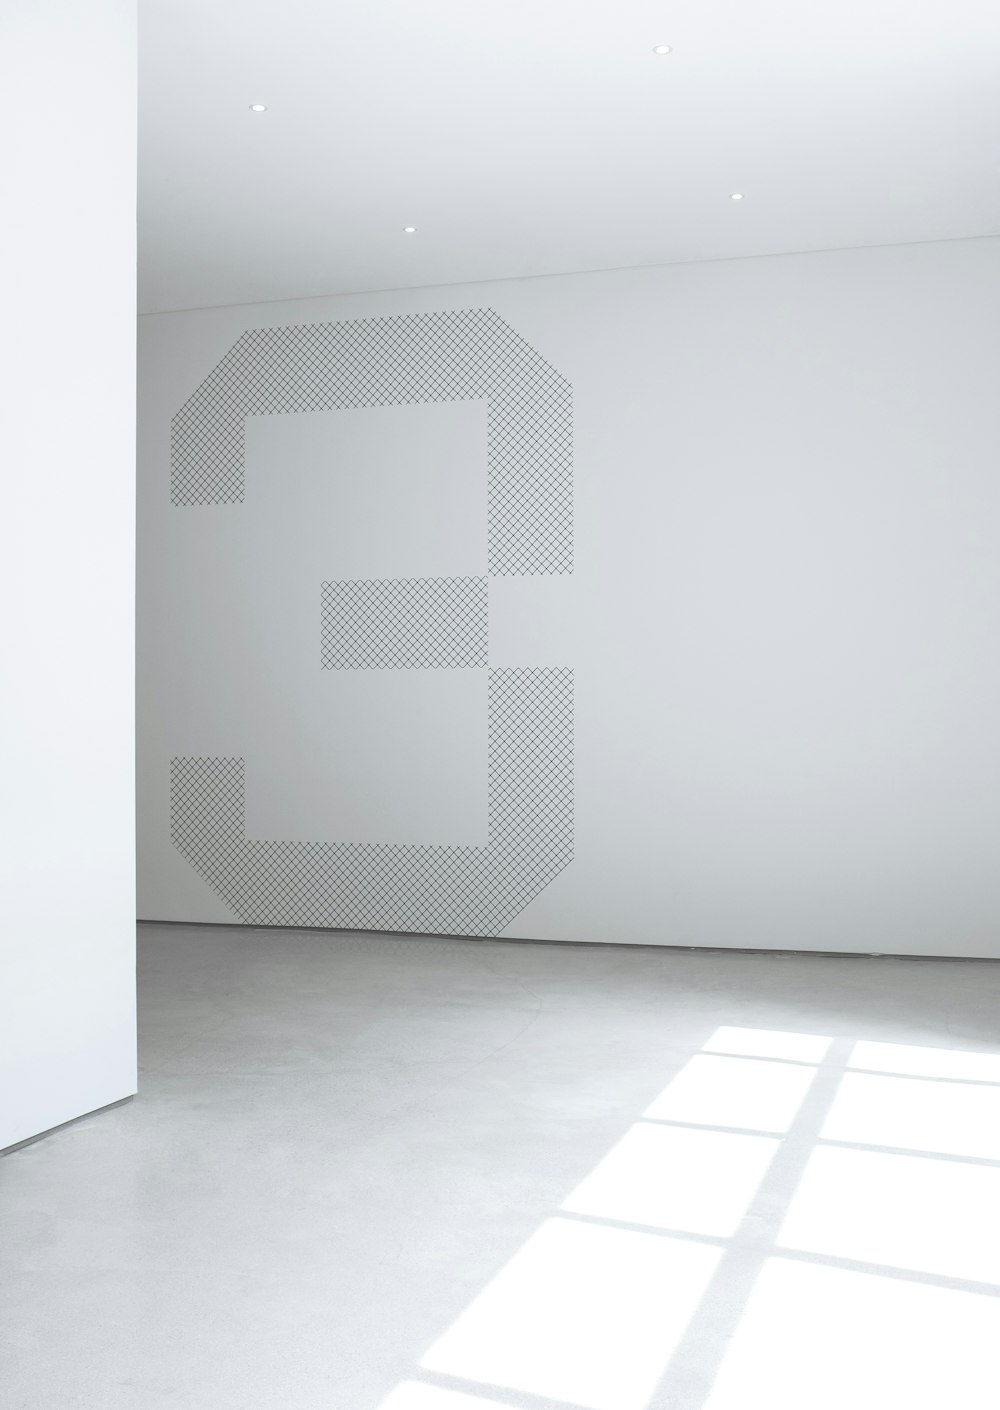 Foto de la pared de hormigón blanco dentro de la habitación